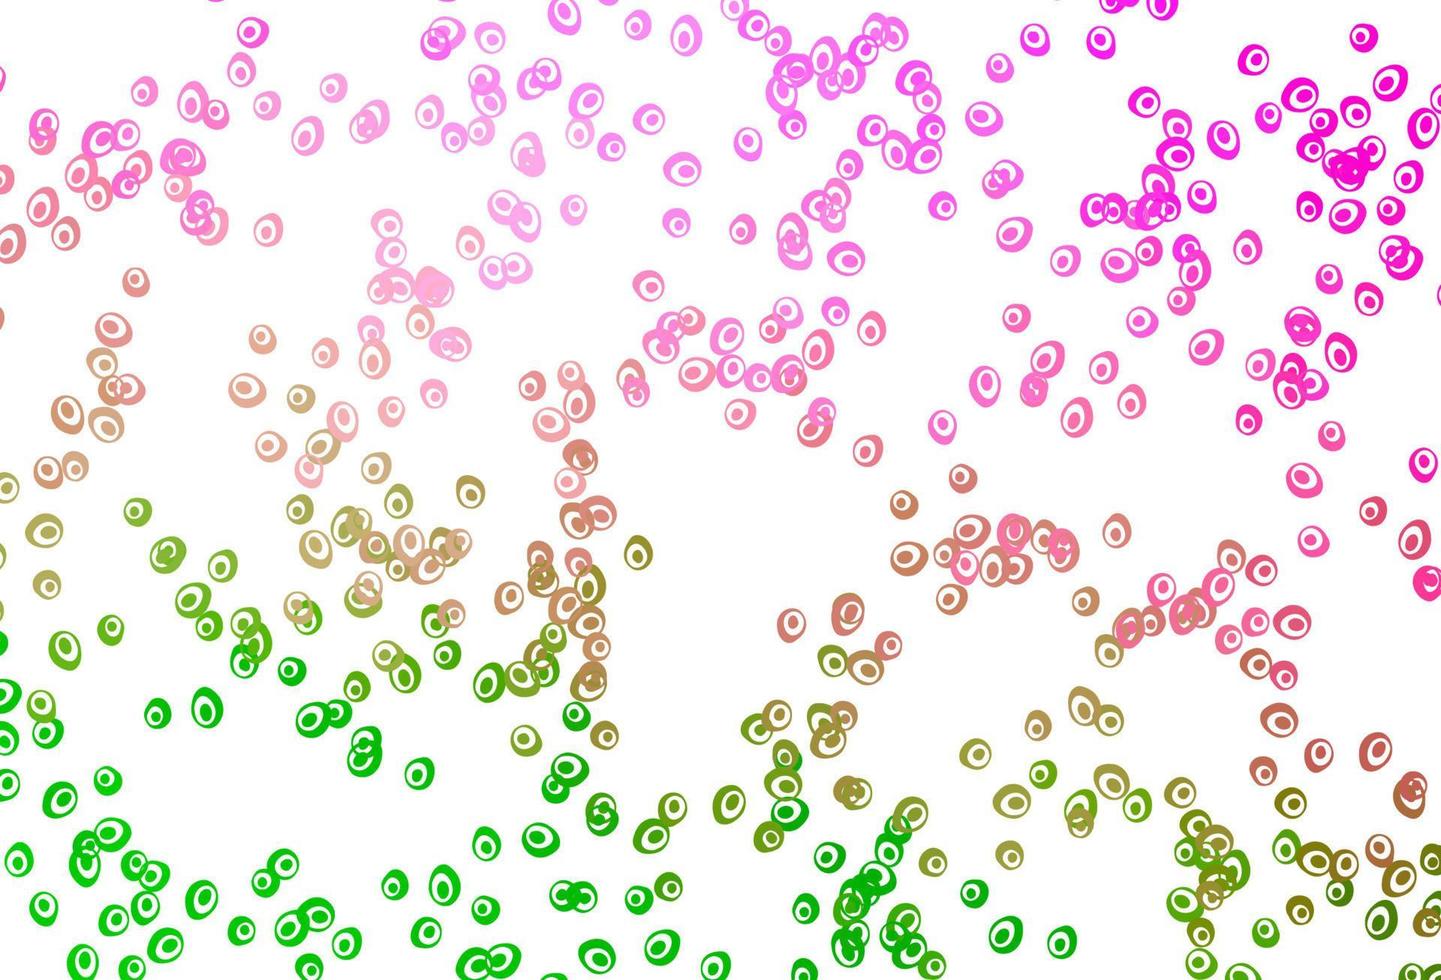 modèle vectoriel rose clair, vert avec des sphères.